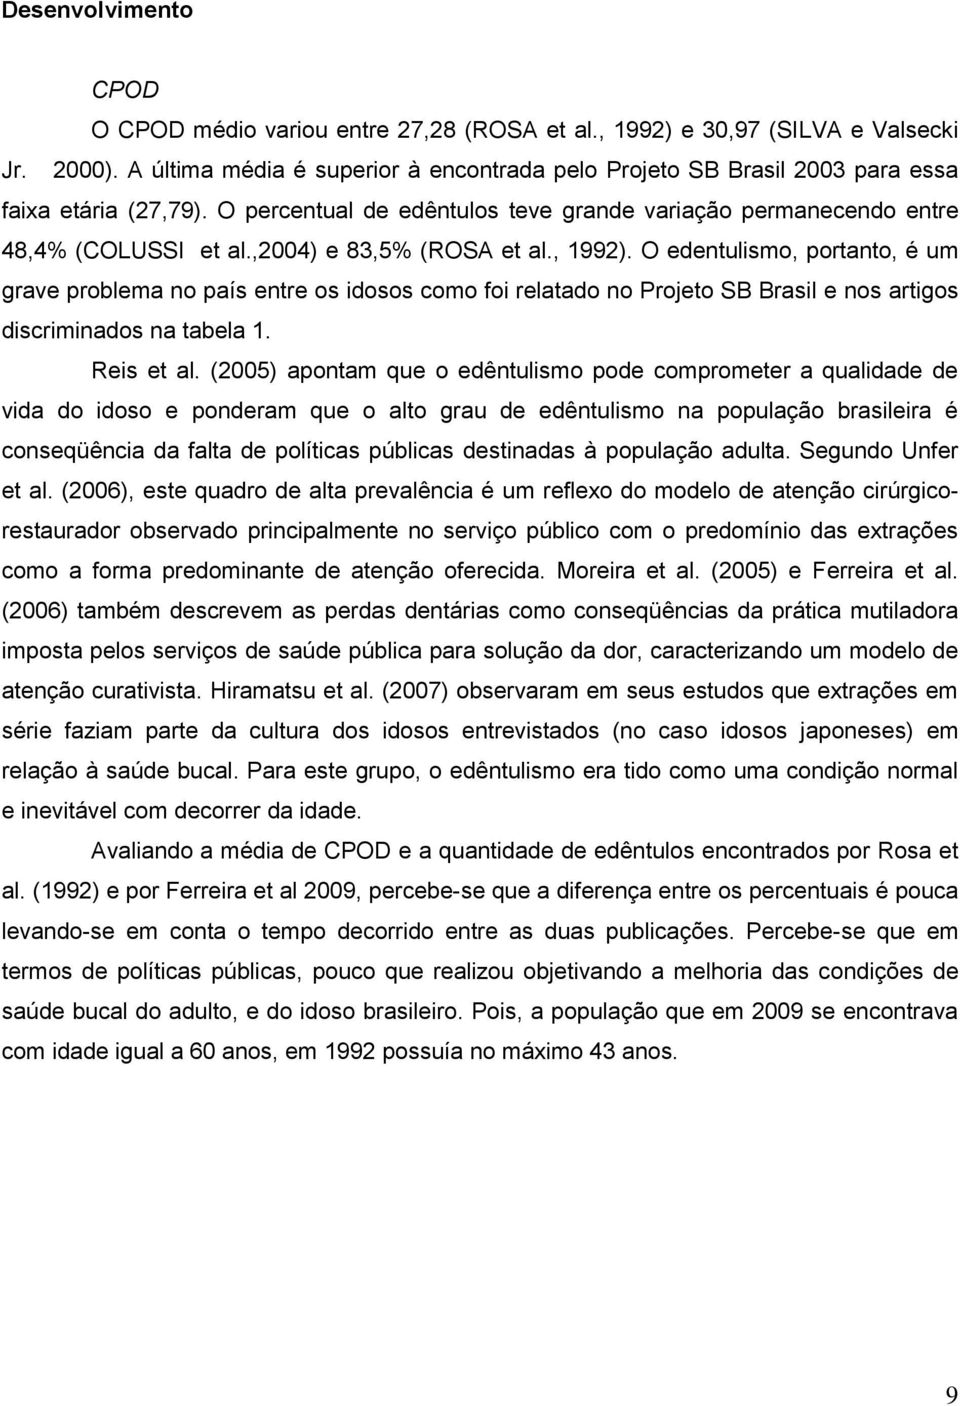 ,2004) e 83,5% (ROSA et al., 1992). O edentulismo, portanto, é um grave problema no país entre os idosos como foi relatado no Projeto SB Brasil e nos artigos discriminados na tabela 1. Reis et al.